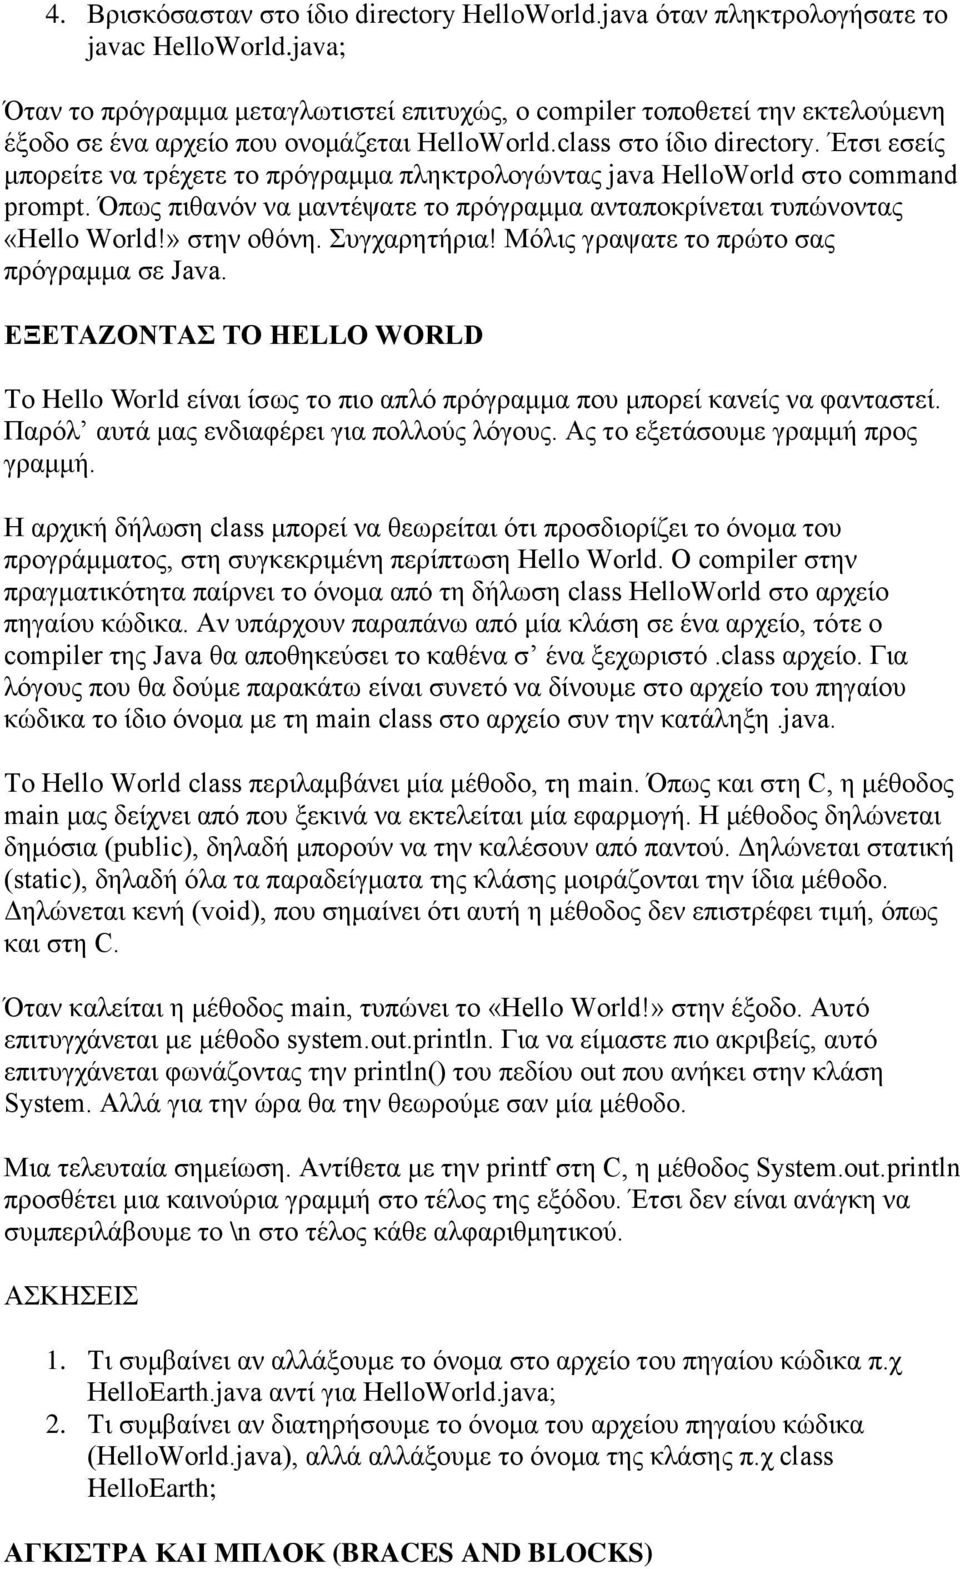 Έτσι εσείς μπορείτε να τρέχετε το πρόγραμμα πληκτρολογώντας java HelloWorld στο command prompt. Όπως πιθανόν να μαντέψατε το πρόγραμμα ανταποκρίνεται τυπώνοντας «Hello World!» στην οθόνη.